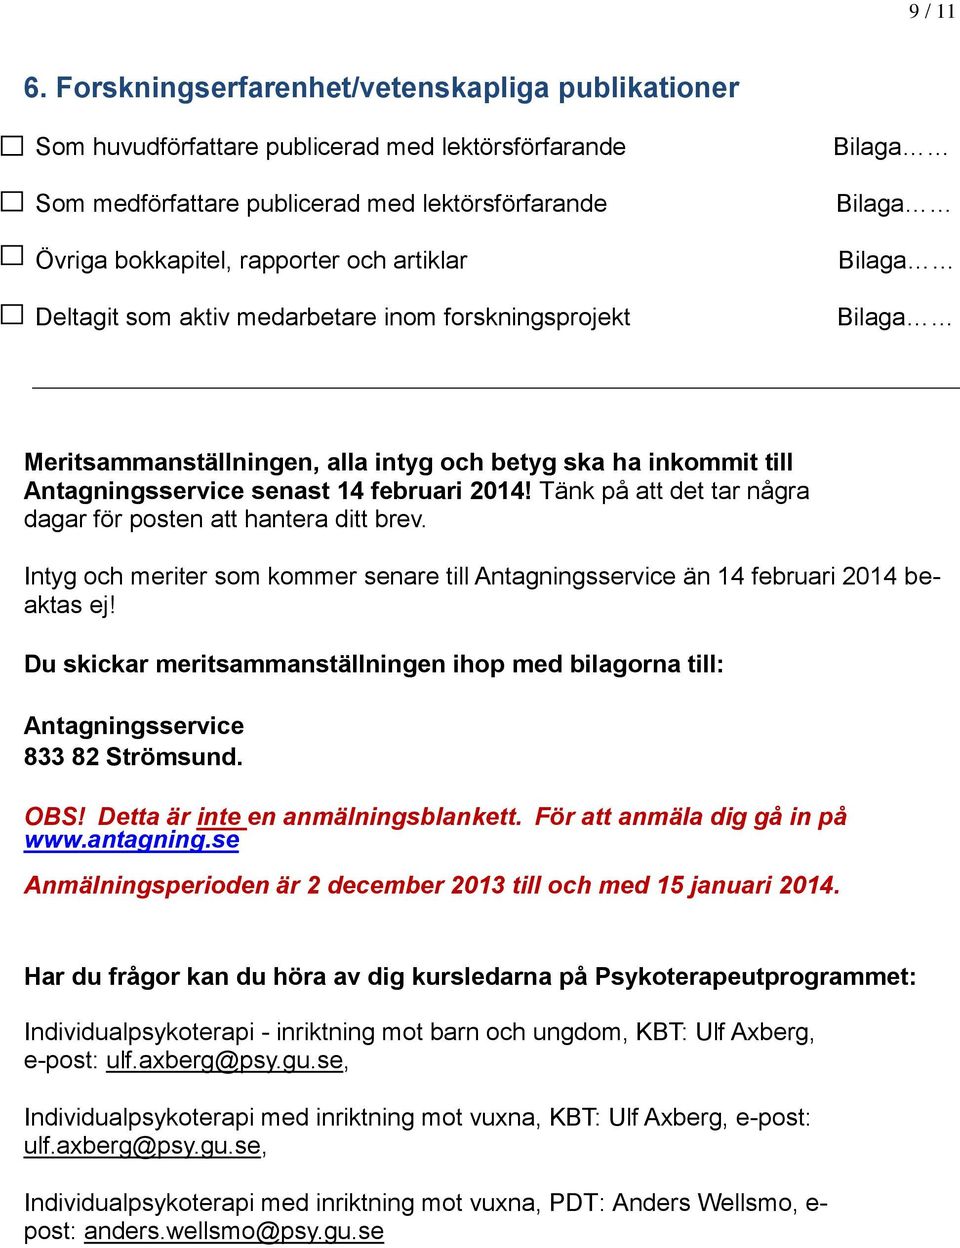 Deltagit som aktiv medarbetare inom forskningsprojekt Bilaga Bilaga Bilaga Bilaga Meritsammanställningen, alla intyg och betyg ska ha inkommit till Antagningsservice senast 14 februari 2014!